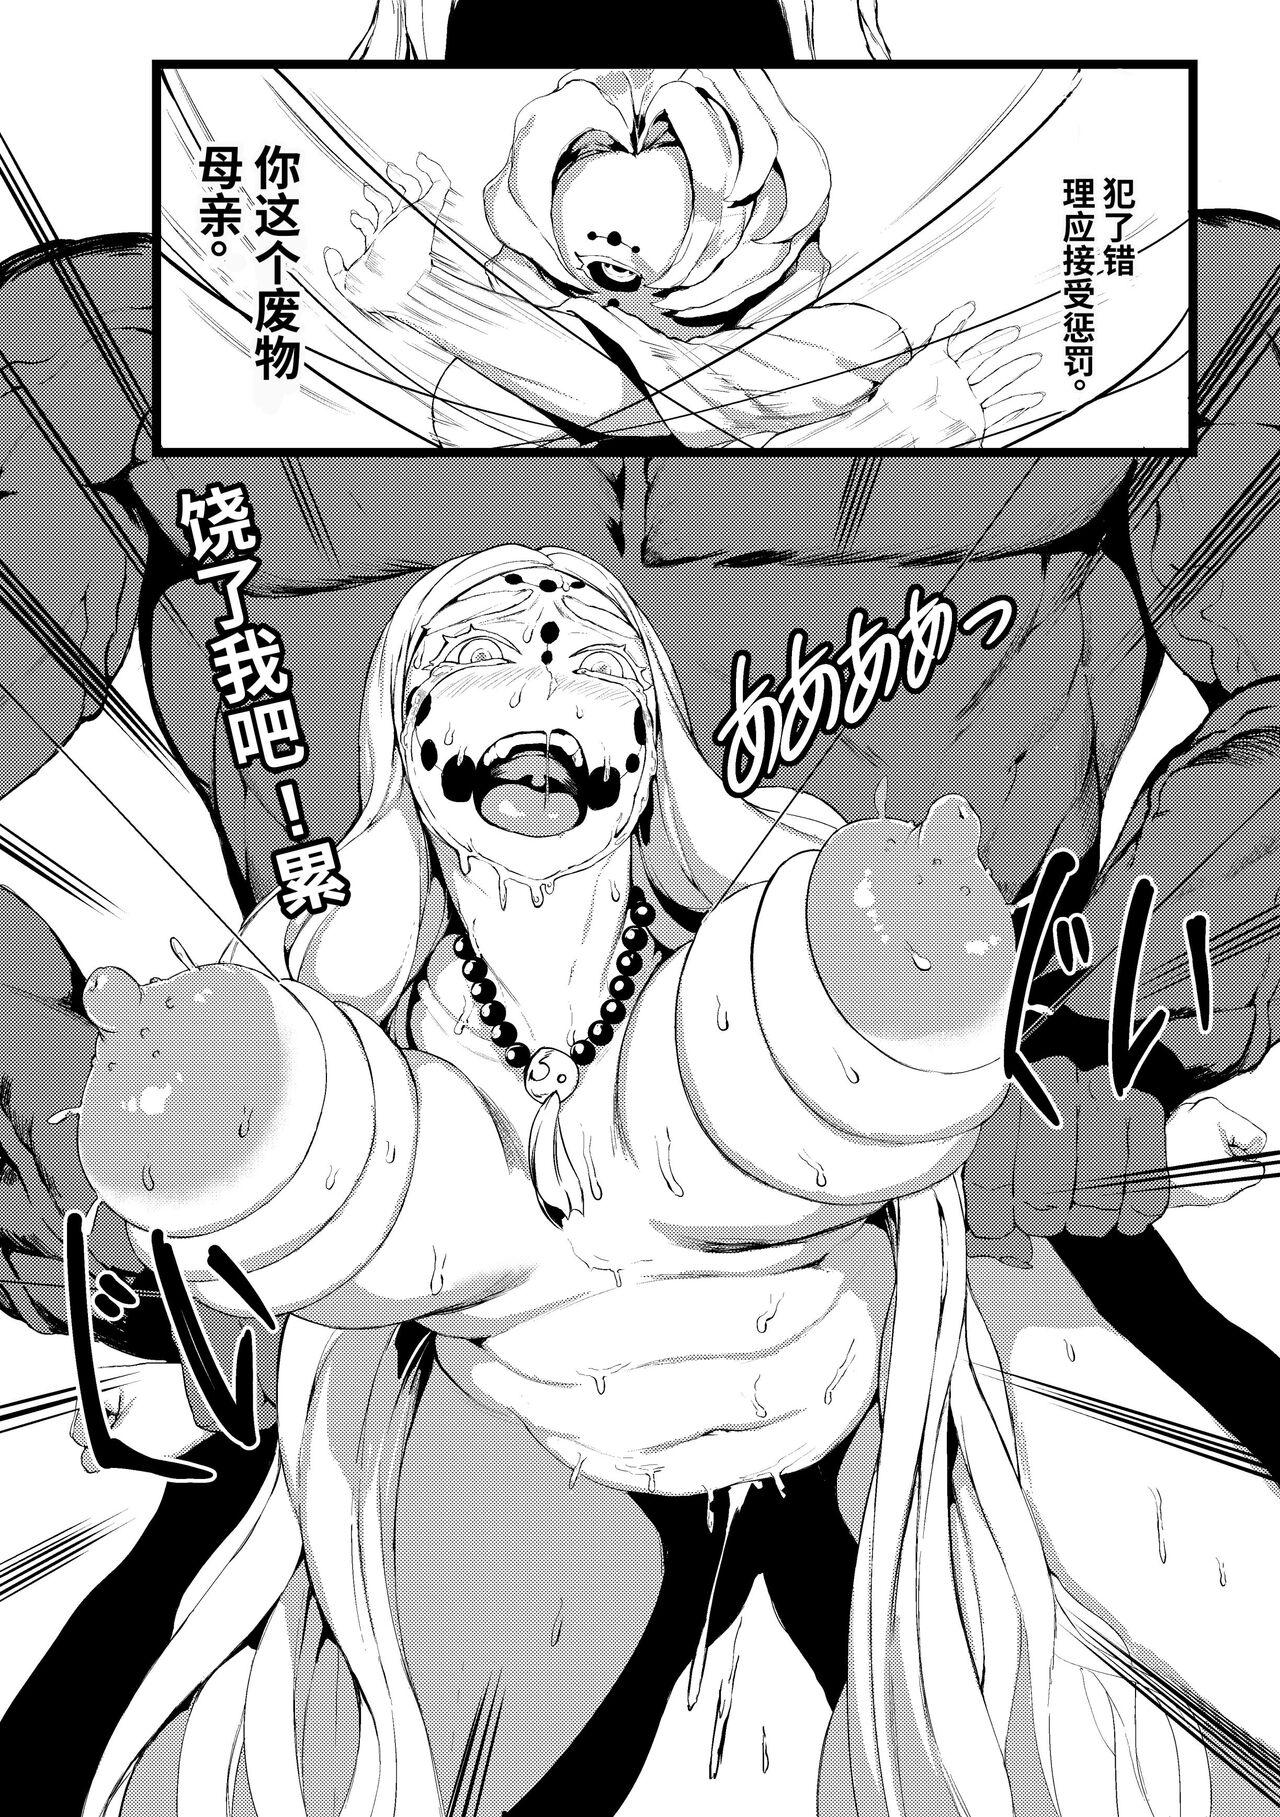 Boy Spider Family - Kimetsu no yaiba | demon slayer Bang Bros - Page 7